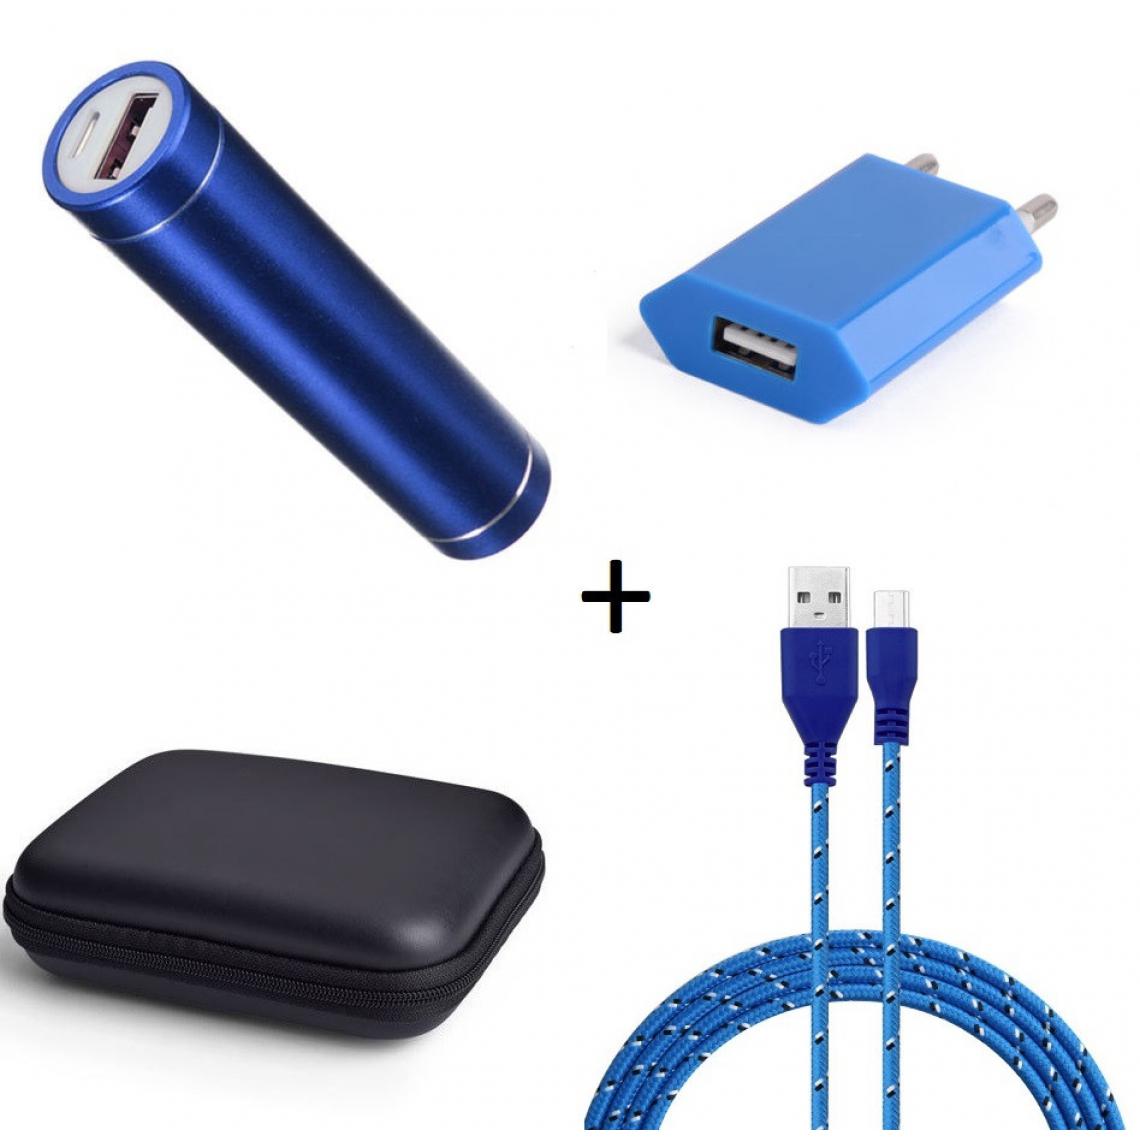 Shot - Pack pour WIKO View 3 (Cable Chargeur Micro USB Tresse 3m + Pochette + Batterie + Prise Secteur) Android (BLEU) - Chargeur secteur téléphone